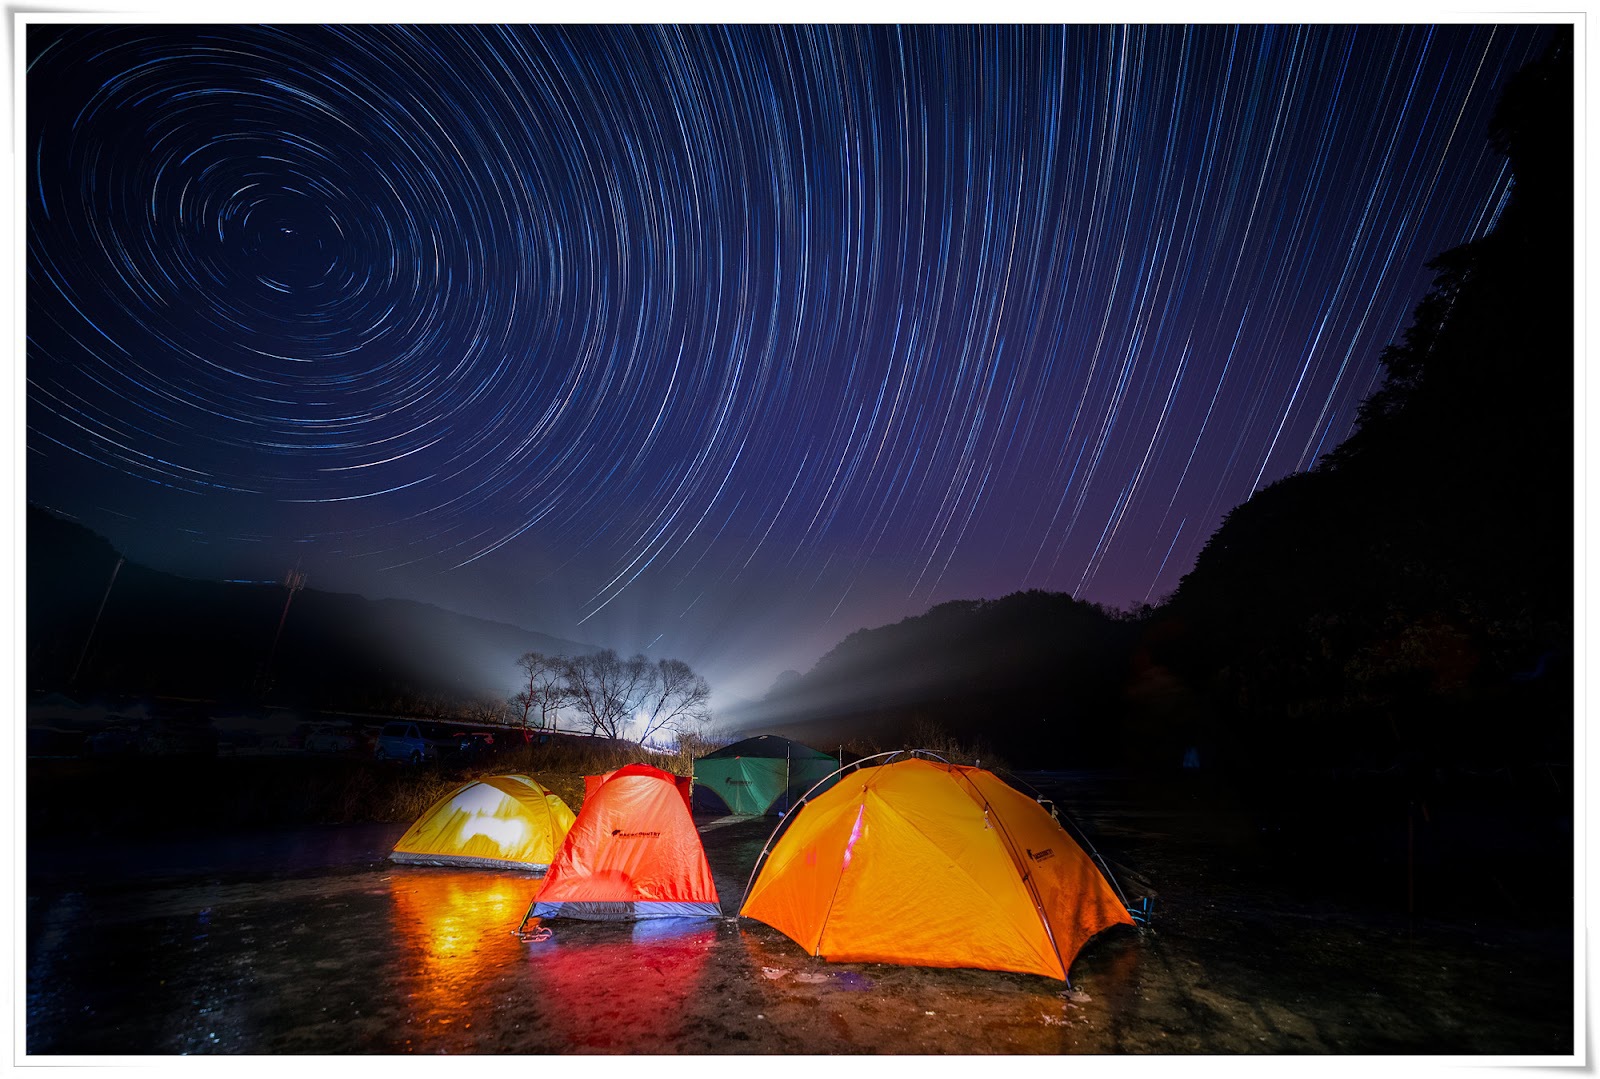 Chàng trai Việt vượt 300 km đi cắm trại trên sông băng tuyệt đẹp ở Hàn Quốc - Ảnh 8.